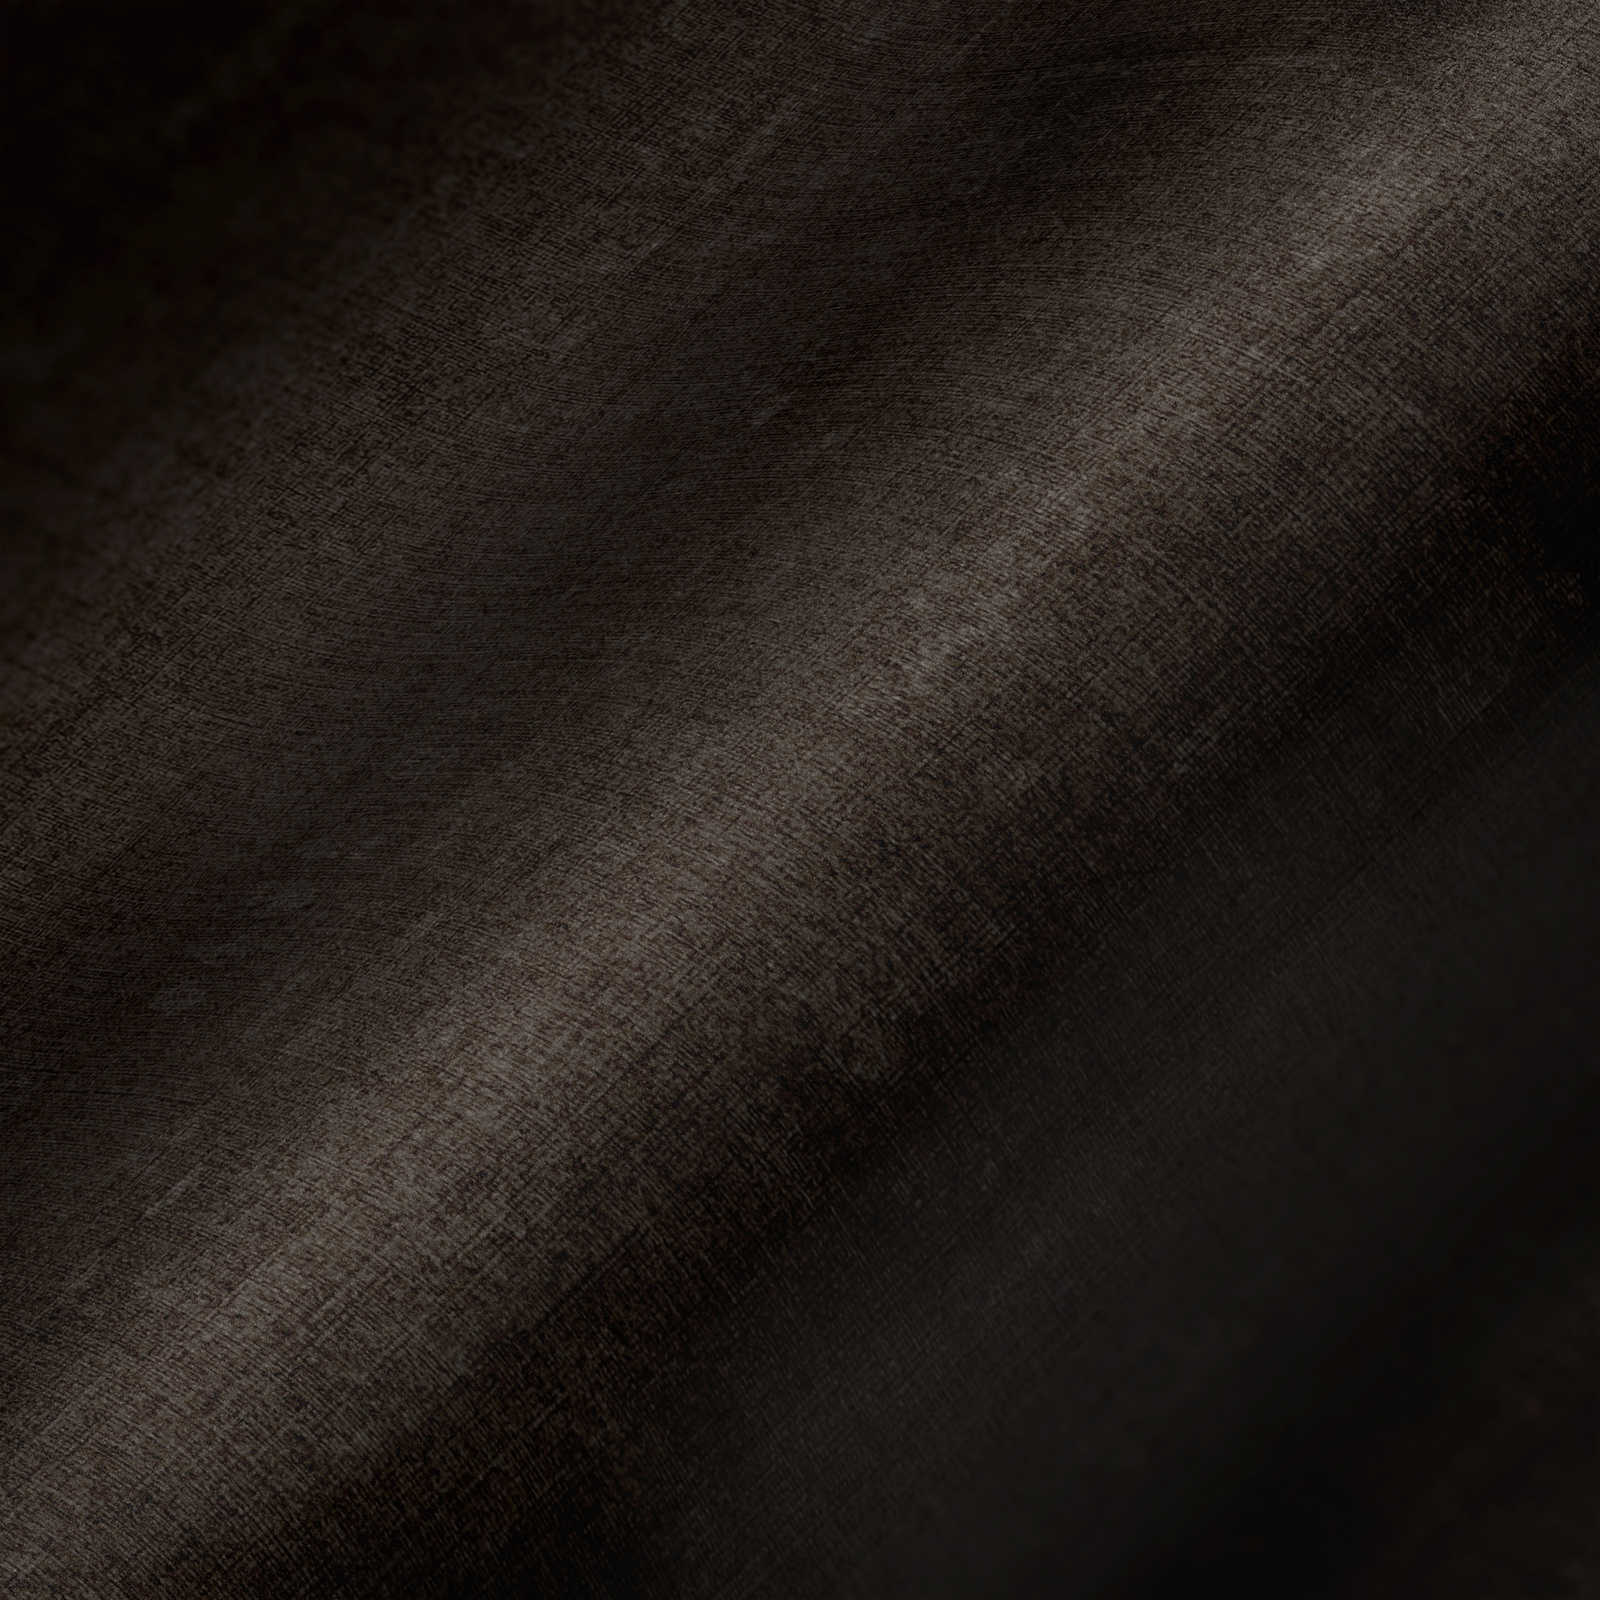             Melierte Tapete unifarben mit Strukturdesign – Grau, Schwarz
        